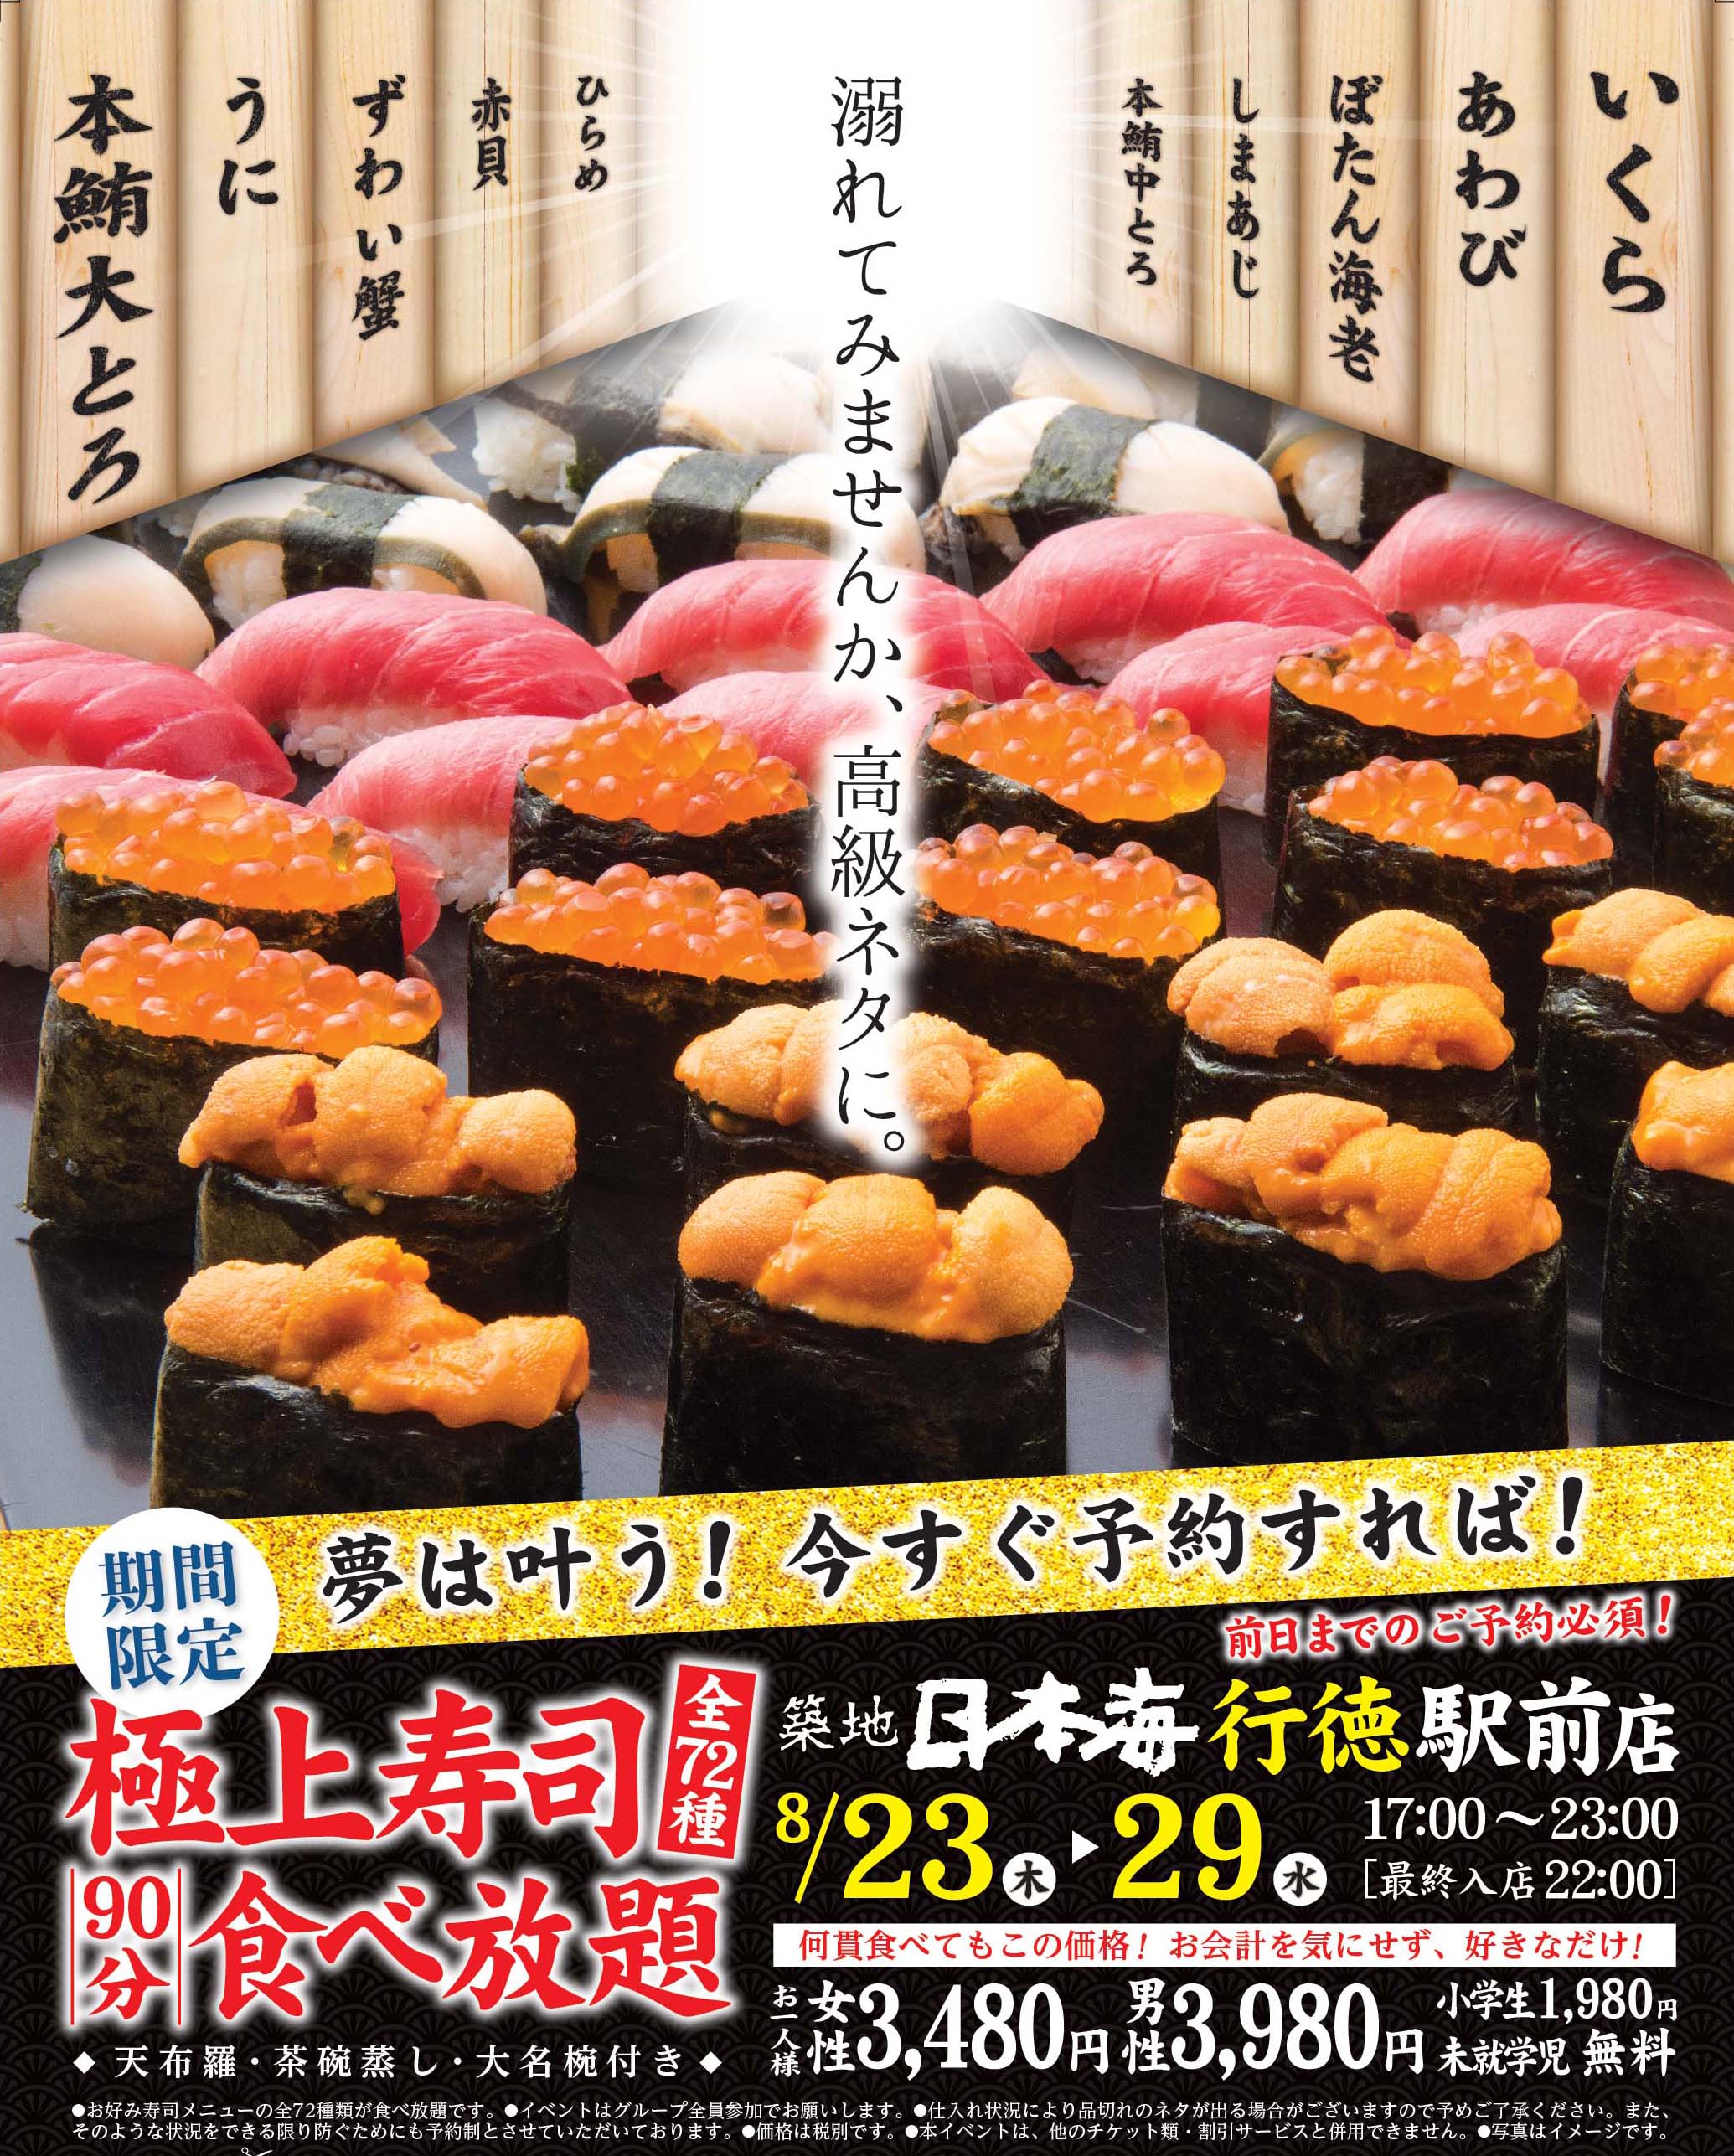 プレミアムな極上寿司食べ放題を体験レポ ウニもイクラも好きなだけ食べられる幸せ 築地日本海 寿司食べ放題 東京散歩ぽ